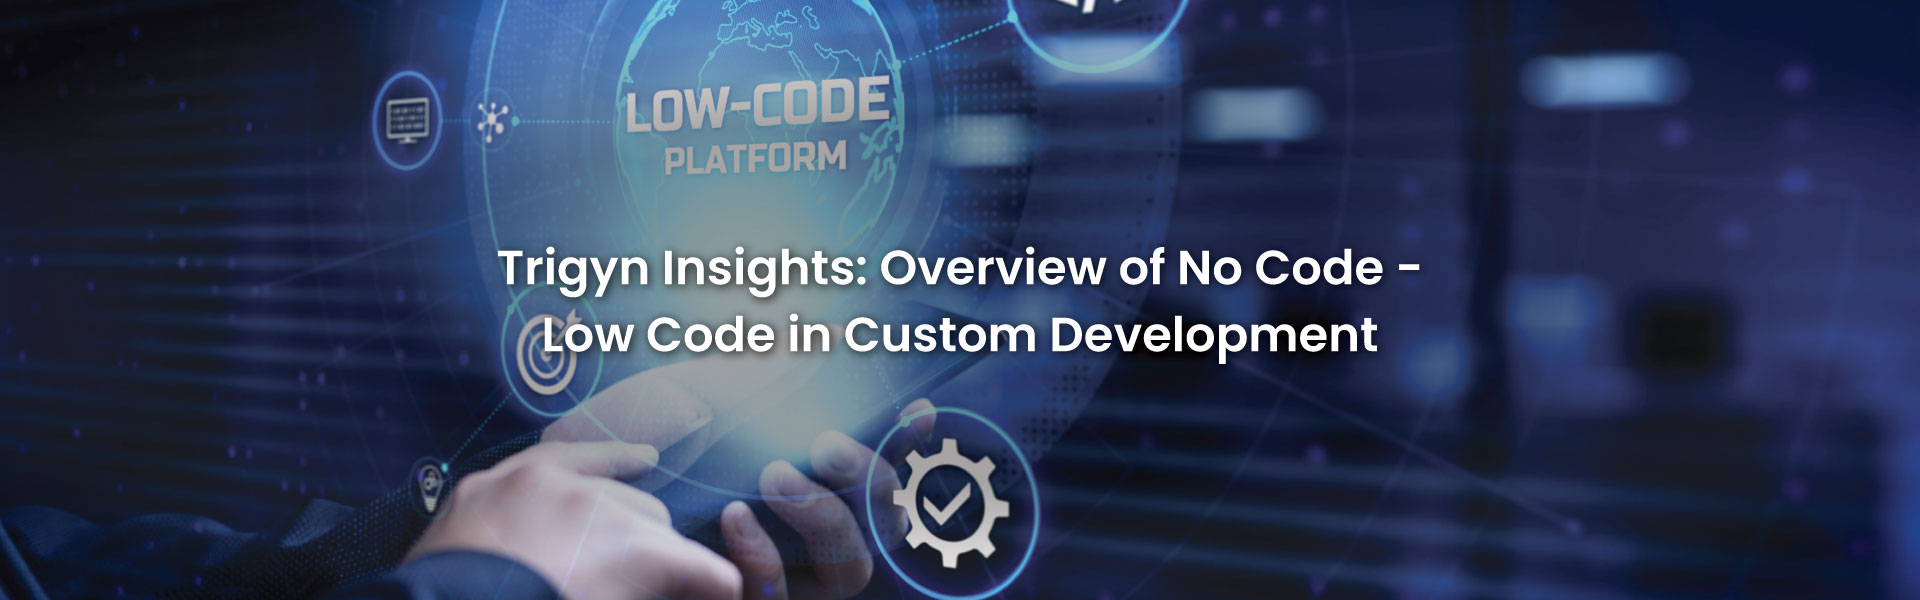 No Code - Low Code in Custom Development